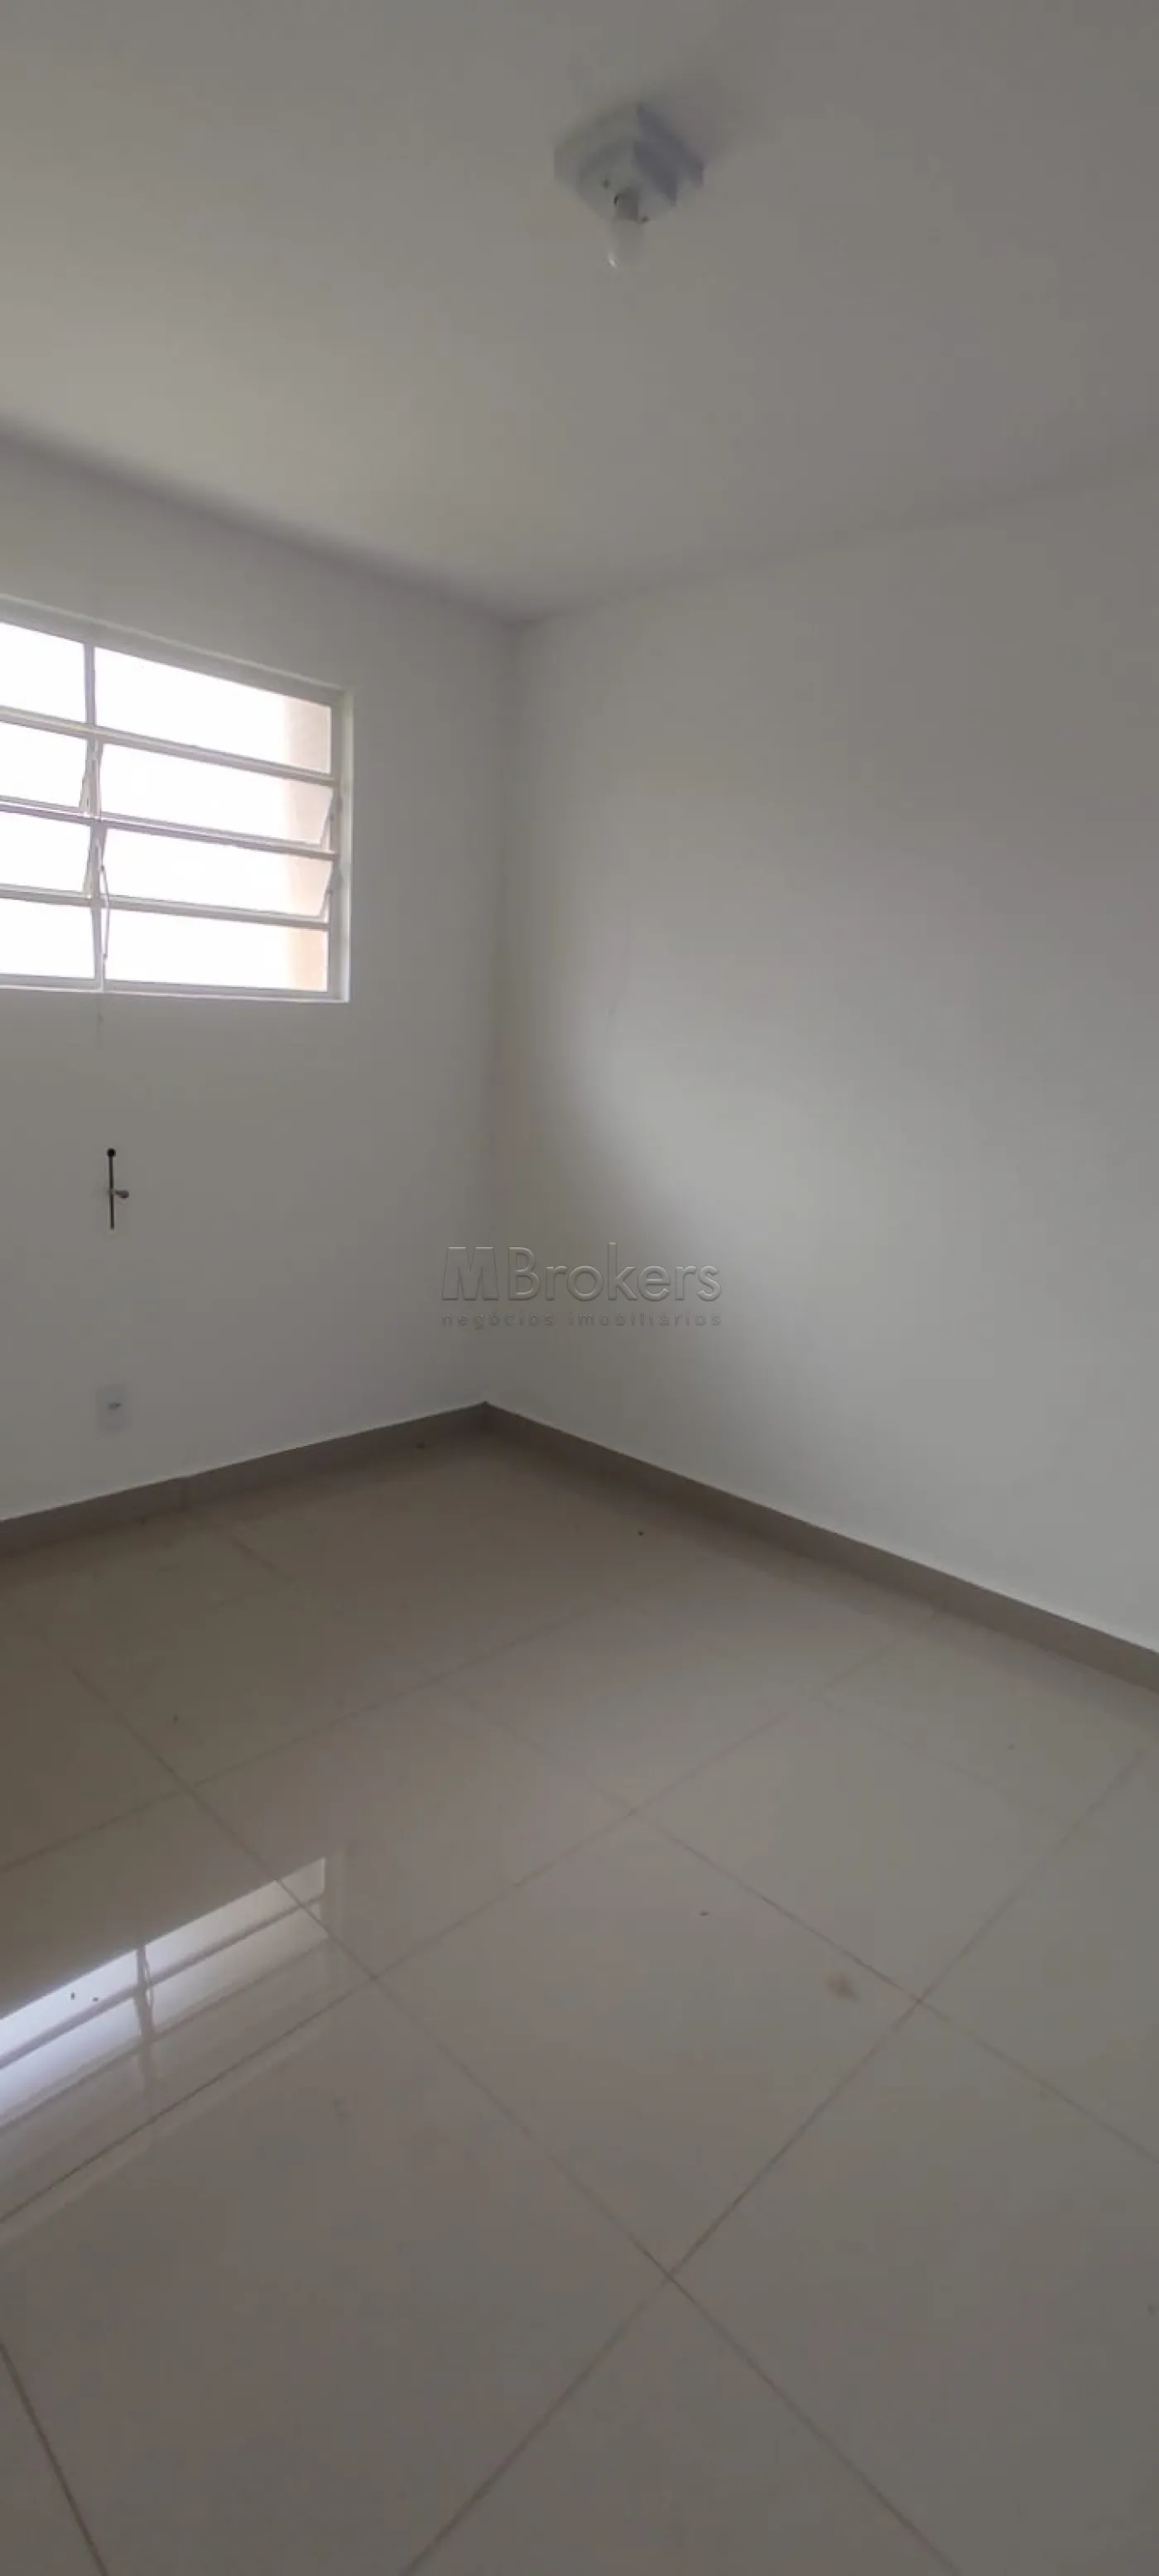 Alugar Casa / Comercial em Botucatu R$ 7.500,00 - Foto 24